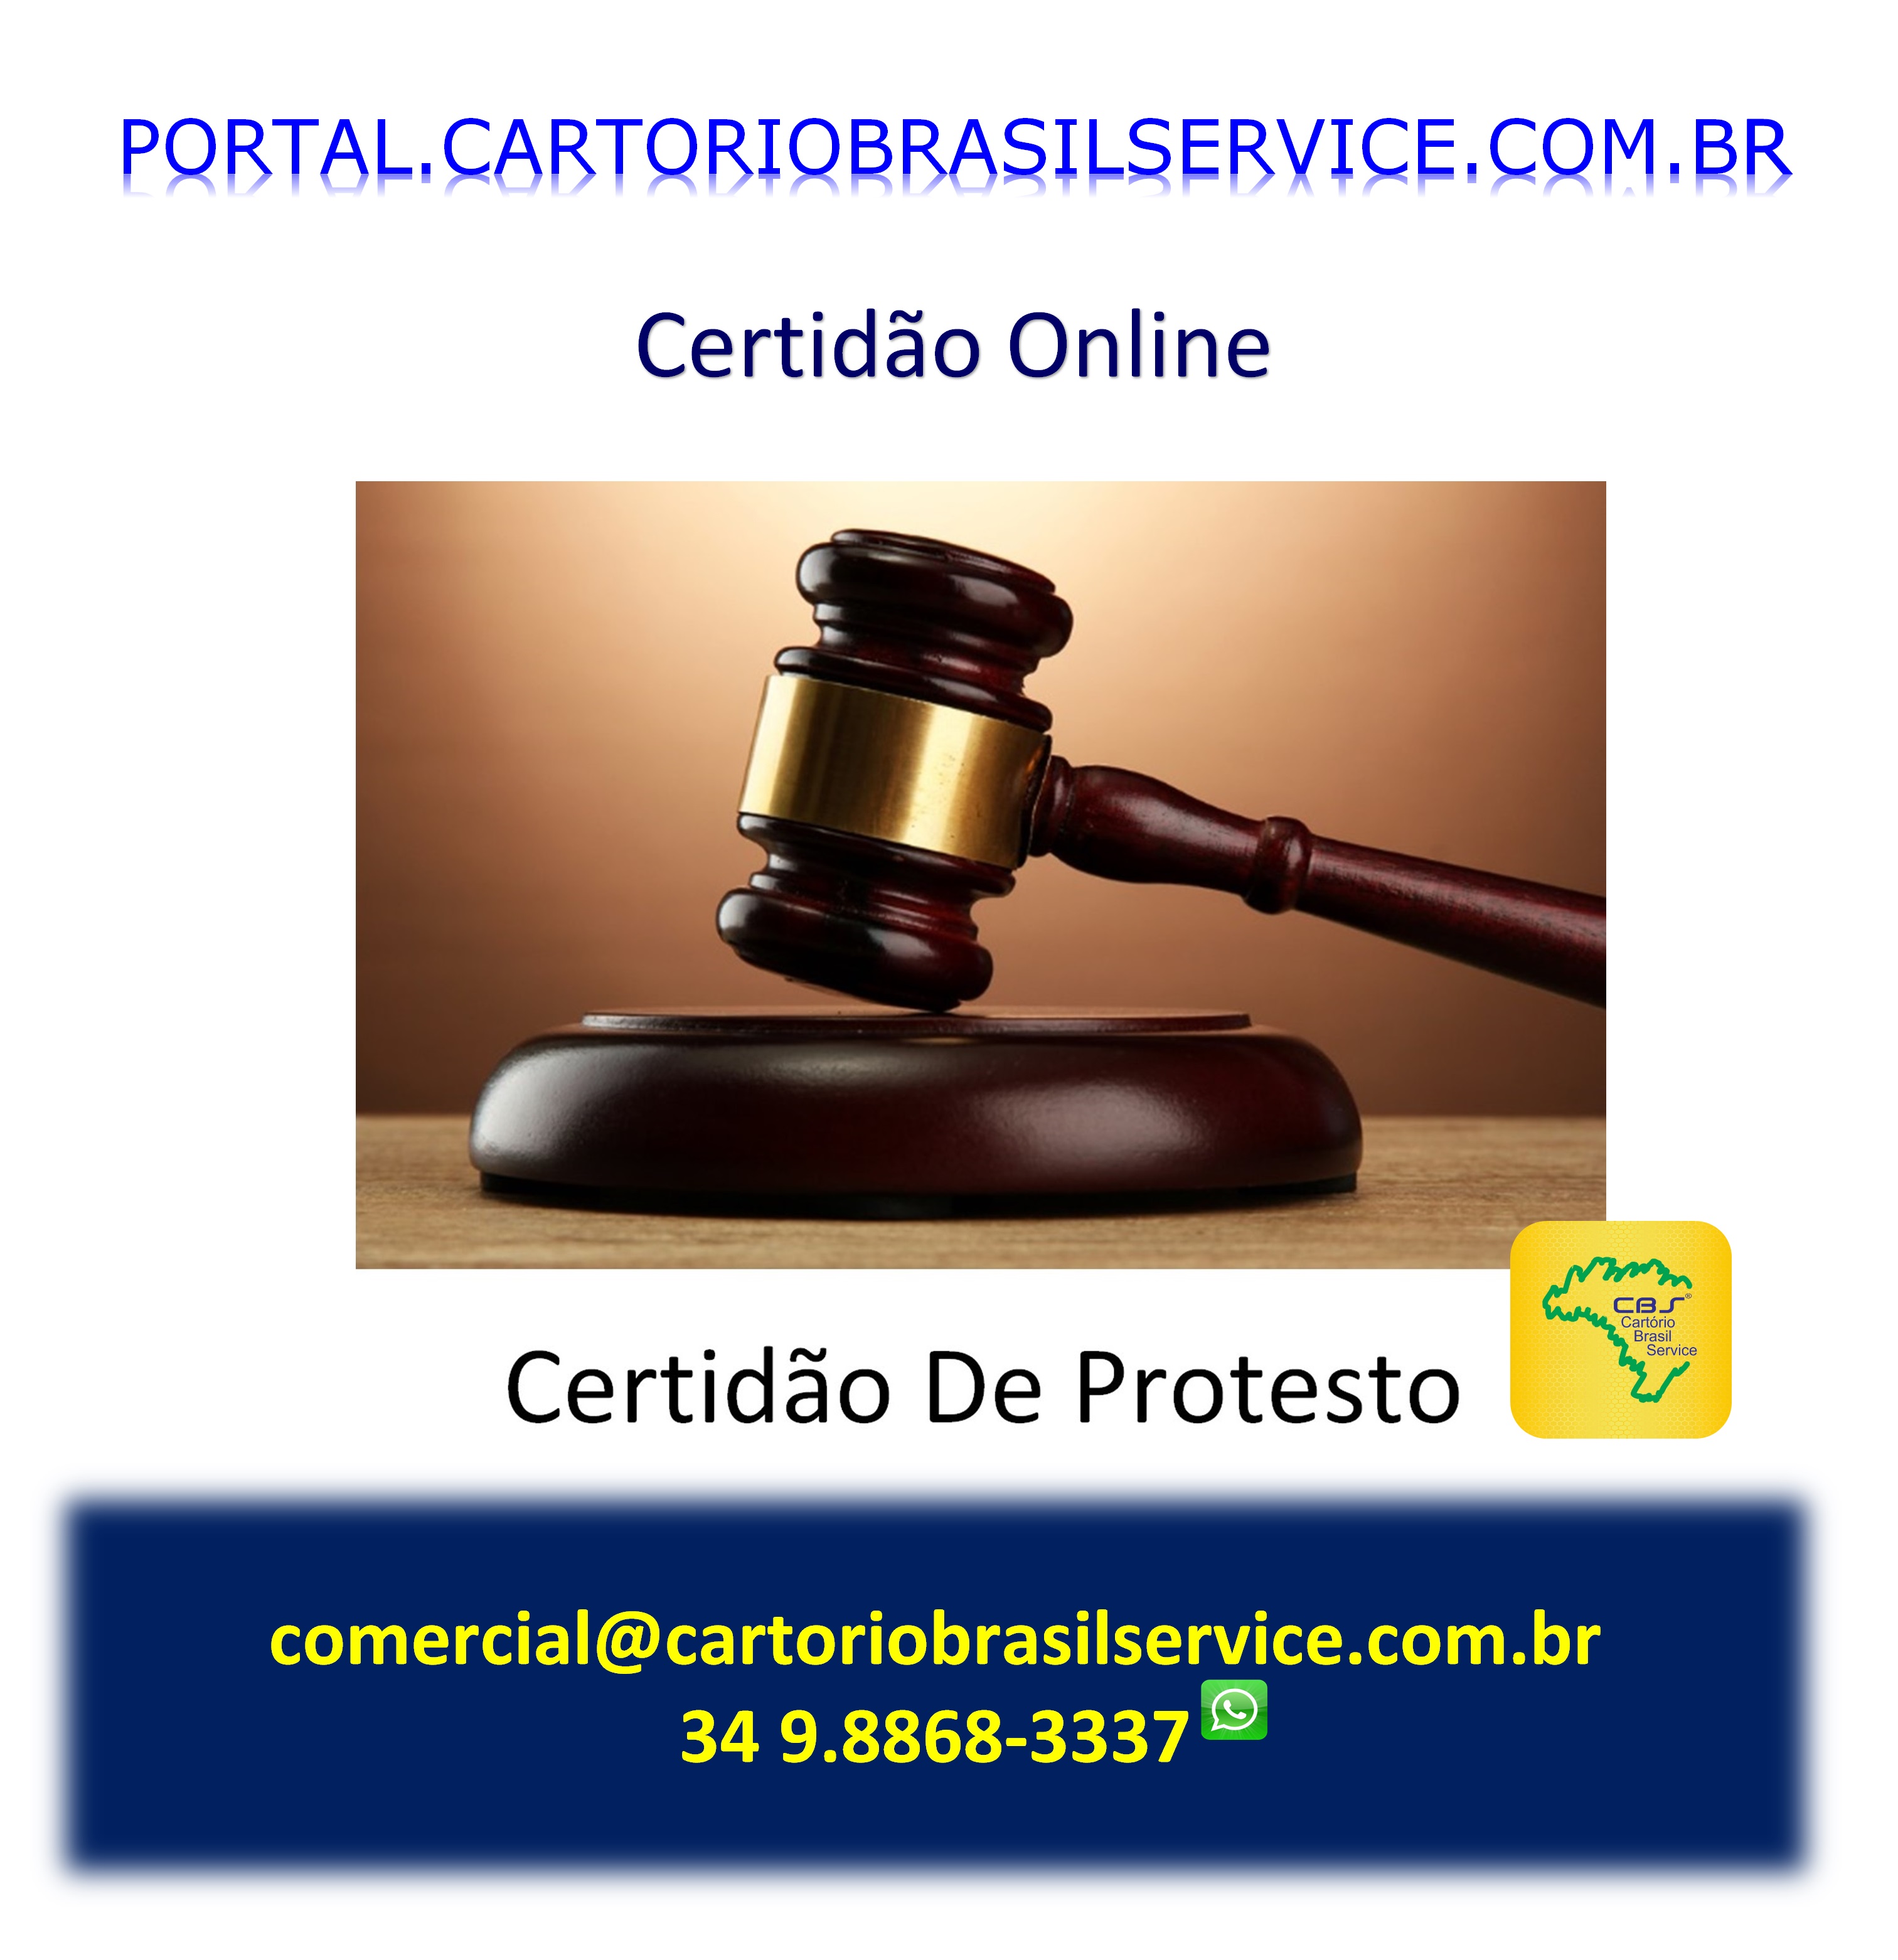 Cartório Brasil Service Cetidões Online de Protesto